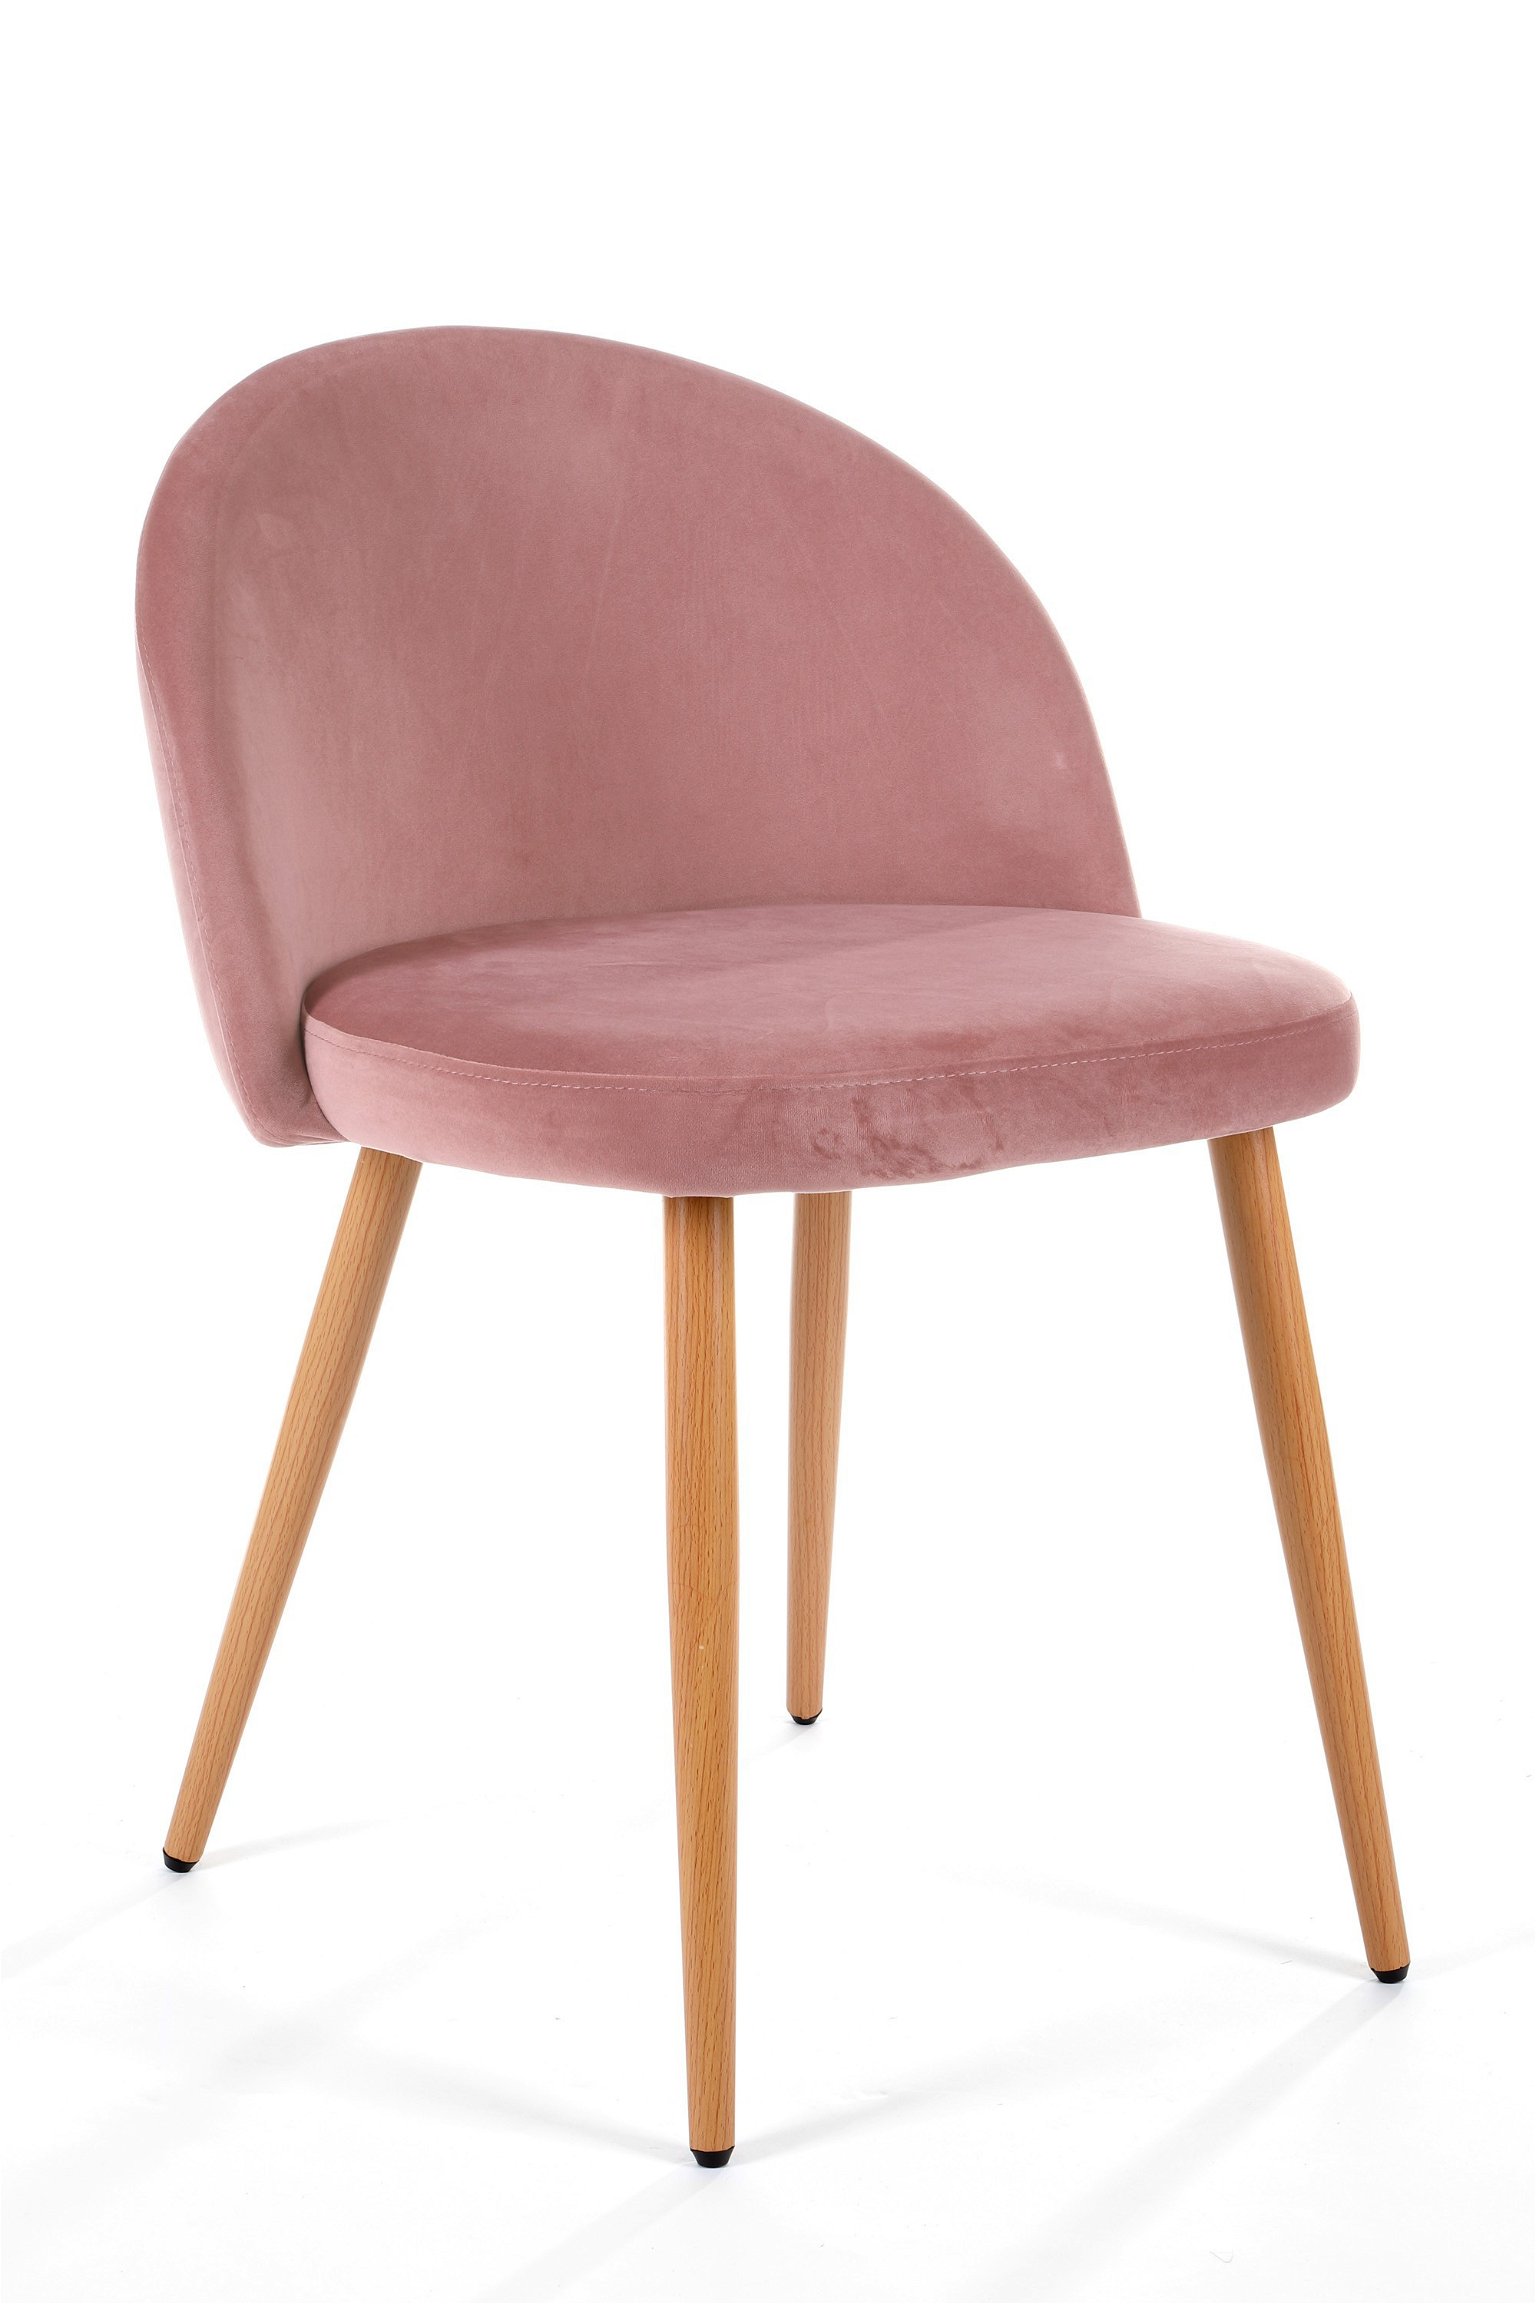 4-rių kėdžių komplektas SJ.075, rožinis - 1